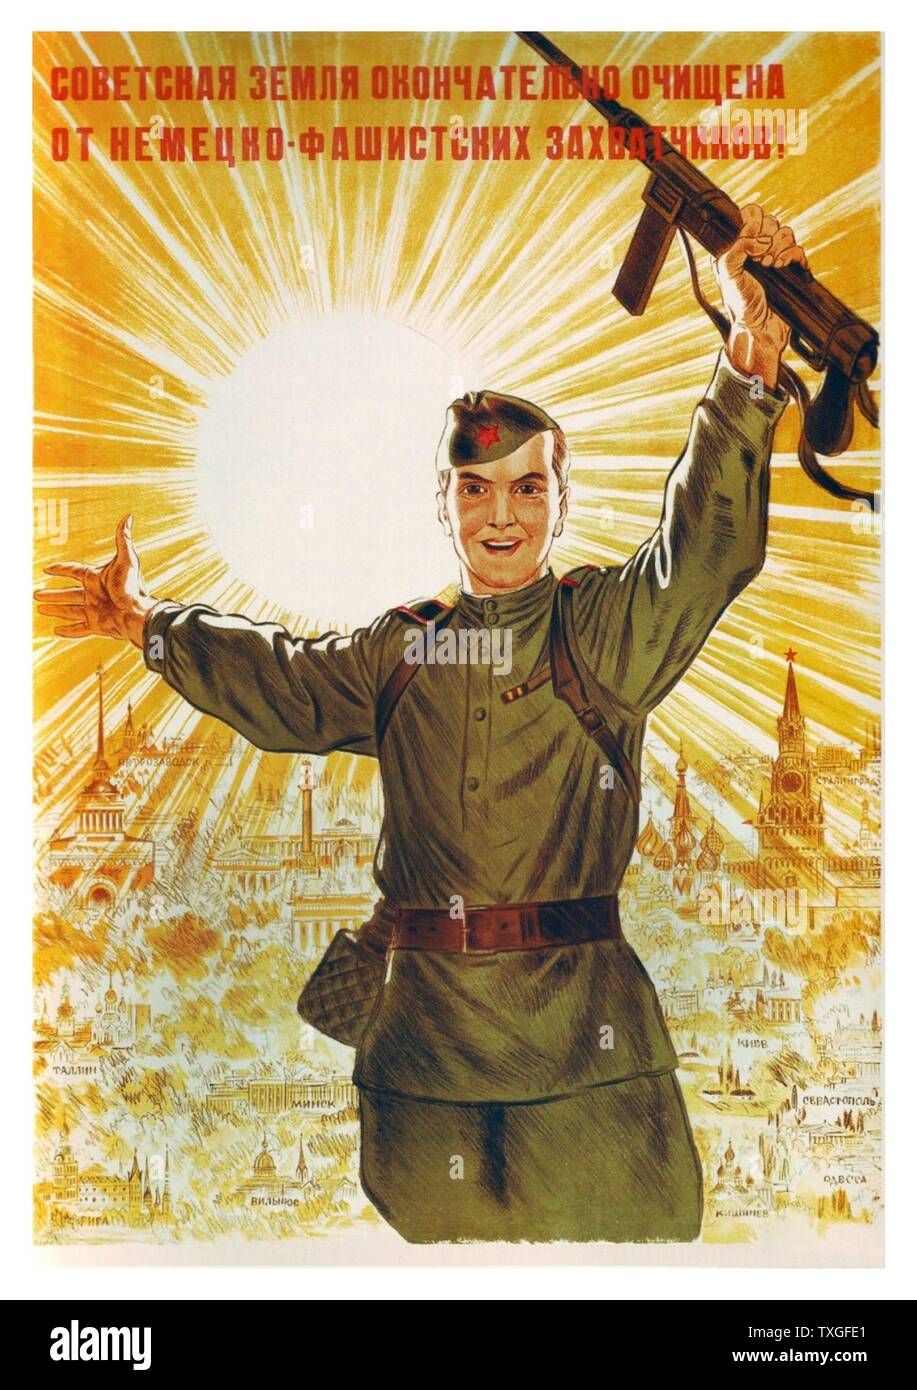 La seconda guerra mondiale, la propaganda russa poster: terra sovietica è completamente eliminato dal tedesco invasori! ByNikolai Kochergin 1944 Foto Stock